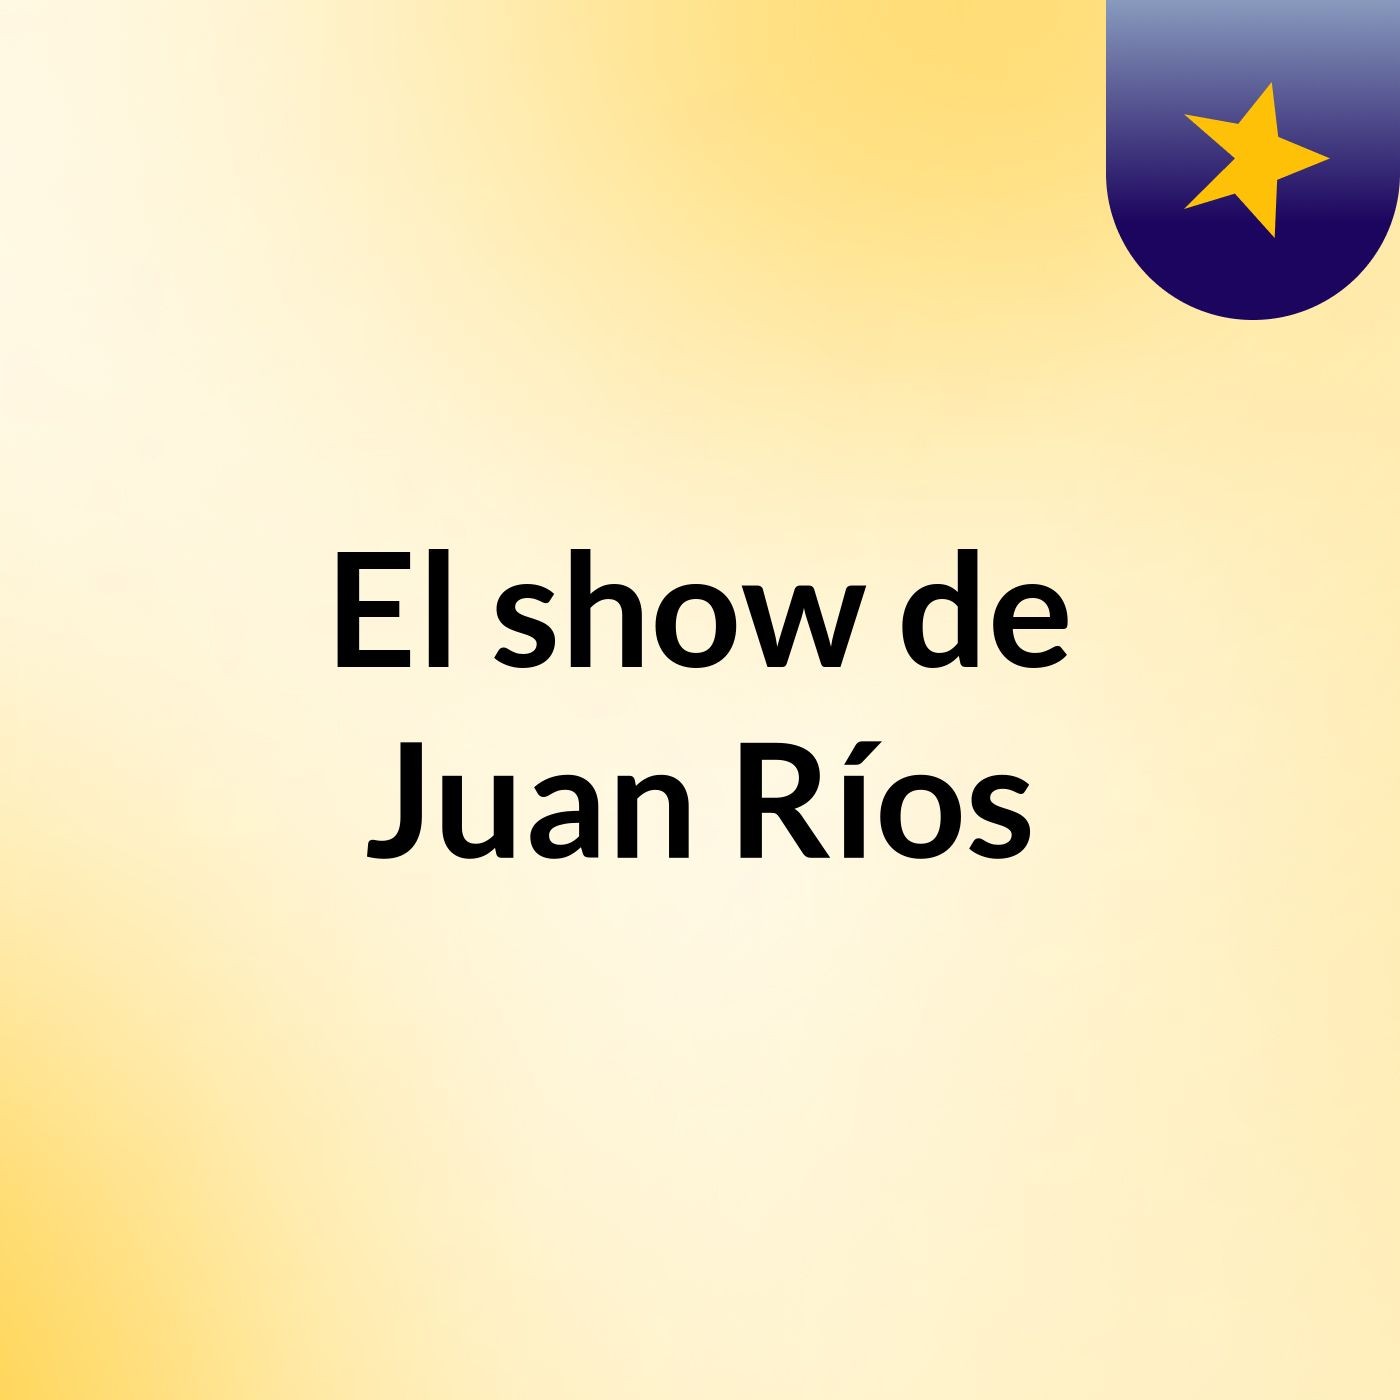 El show de Juan Ríos